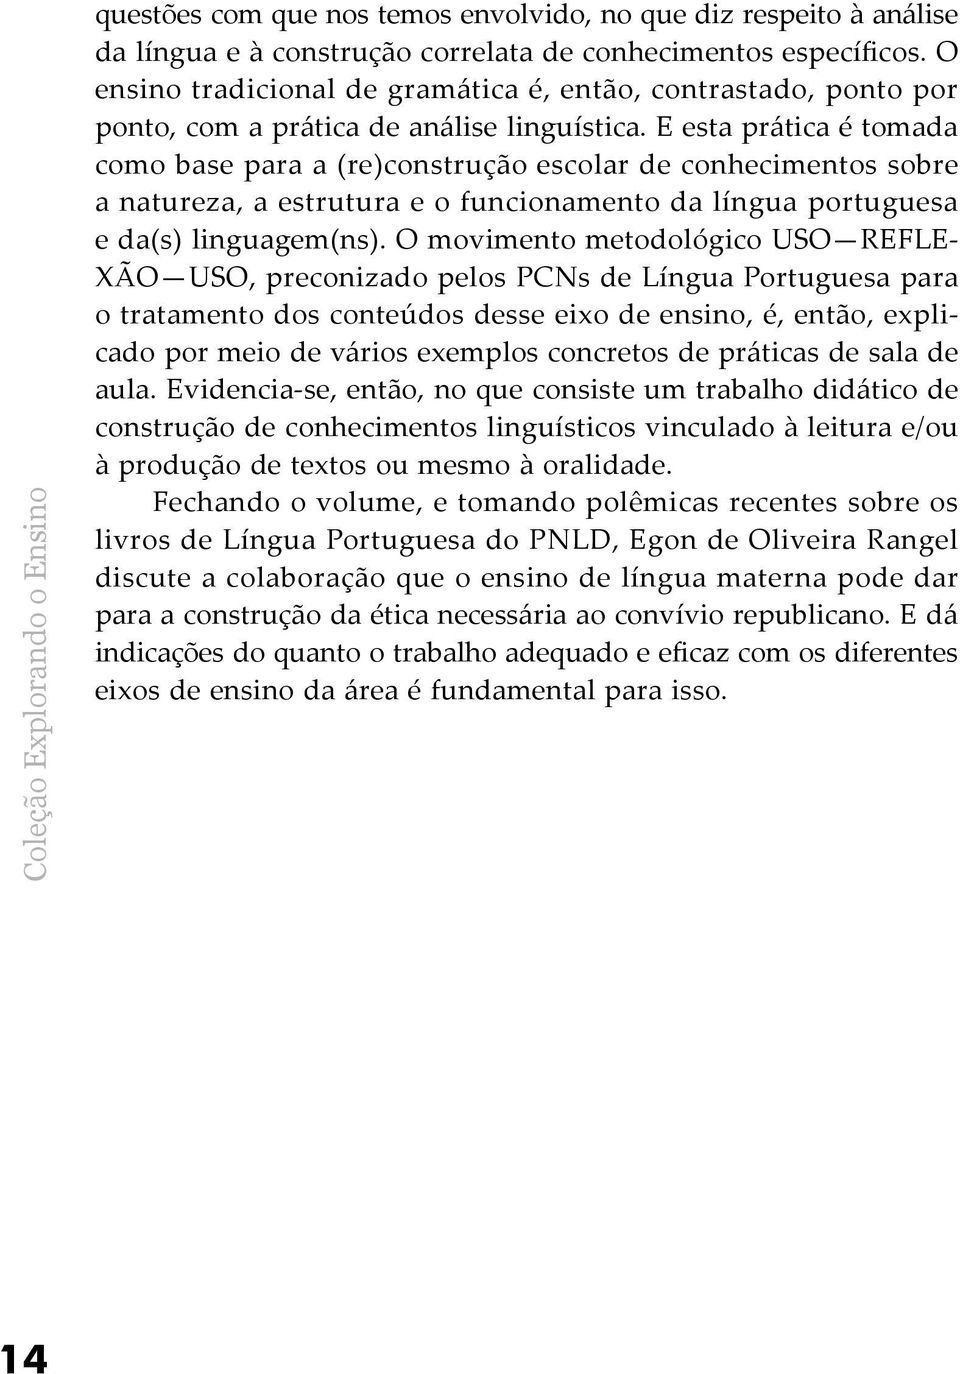 E esta prática é tomada como base para a (re)construção escolar de conhecimentos sobre a natureza, a estrutura e o funcionamento da língua portuguesa e da(s) linguagem(ns).